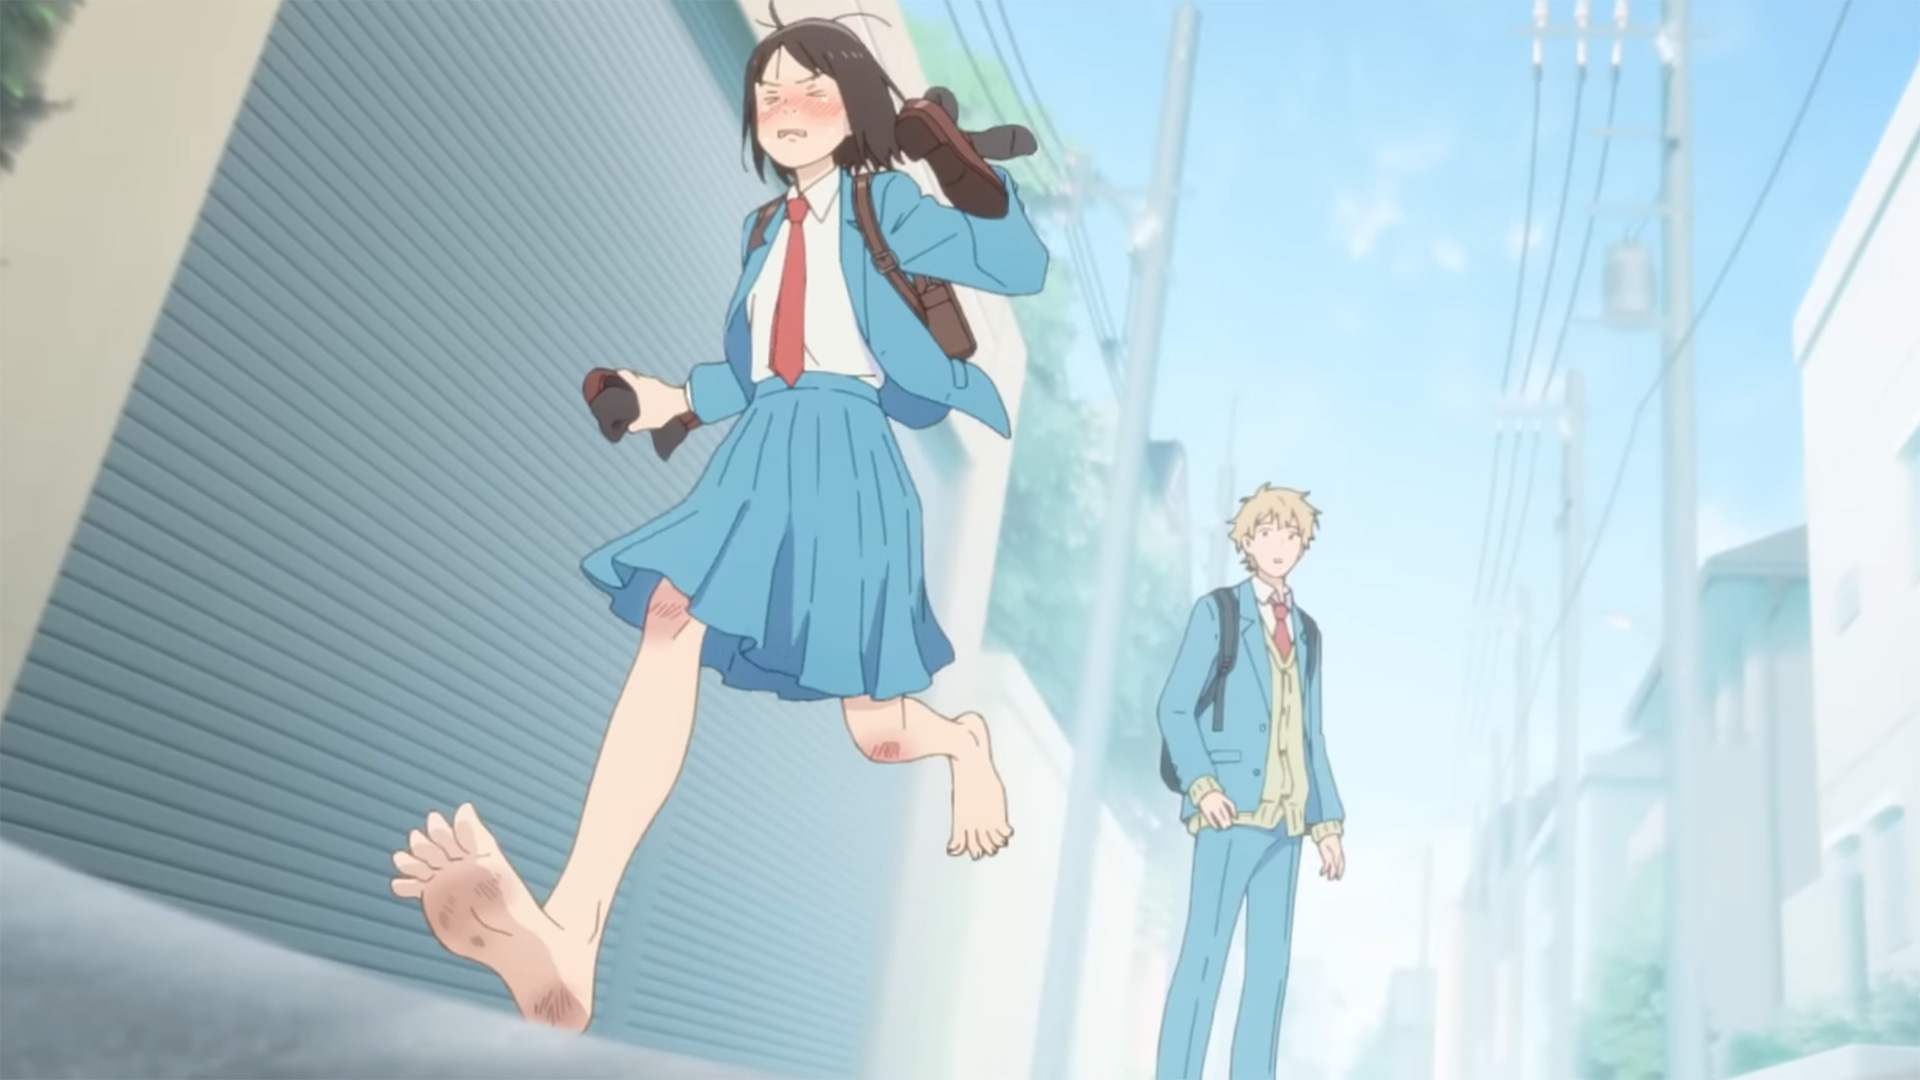 Skip to Loafer - Anime ganha teaser e confirmação de dubladores